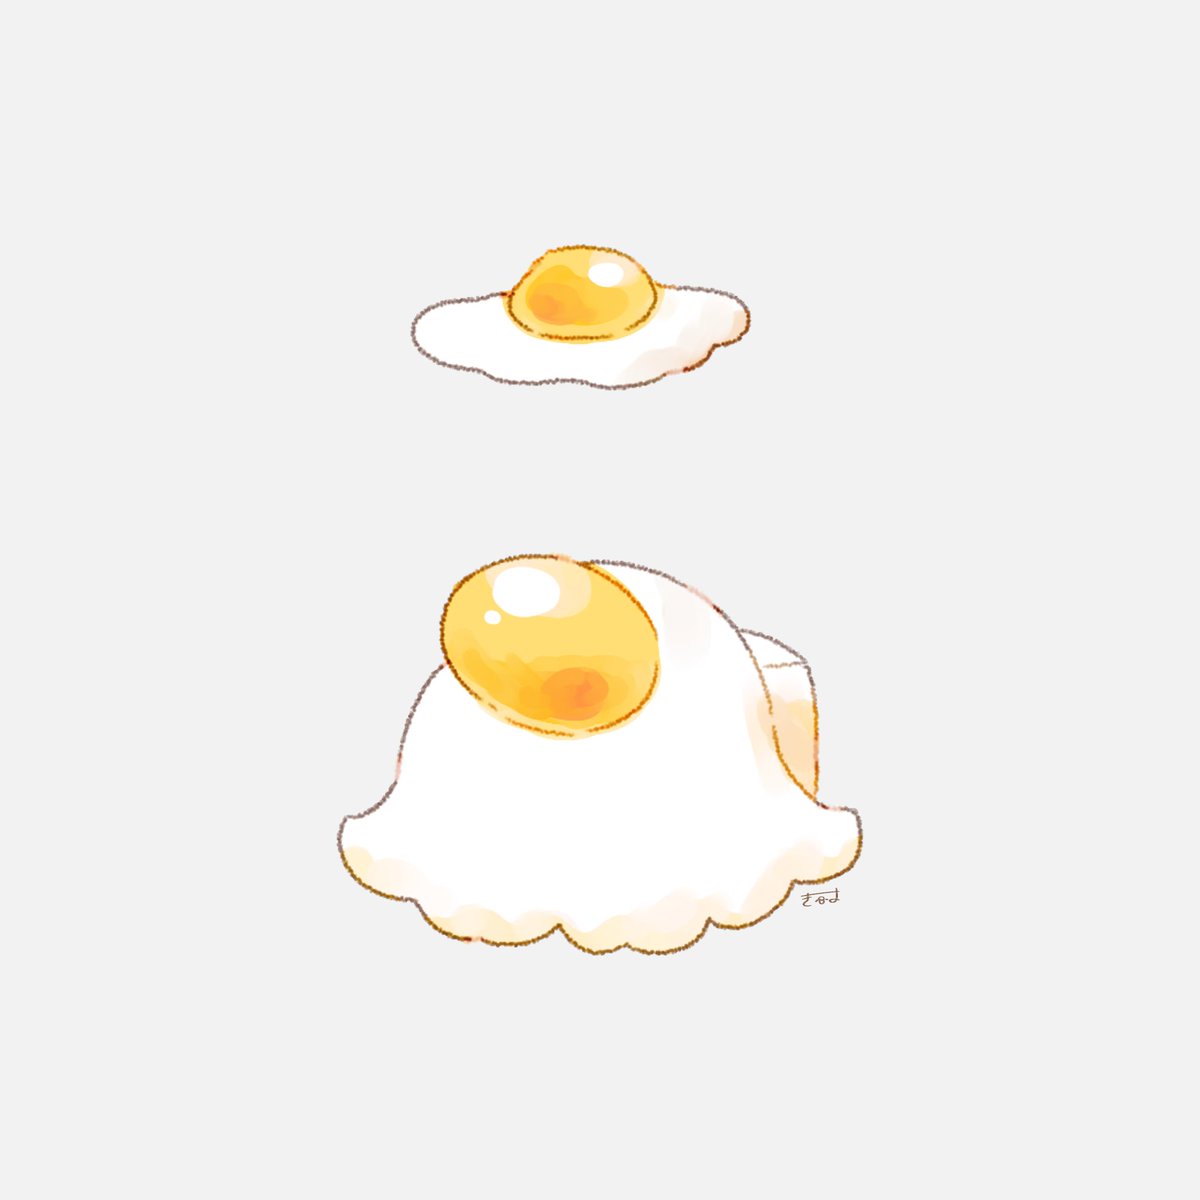 no humans egg (food) fried egg food simple background egg object on head  illustration images